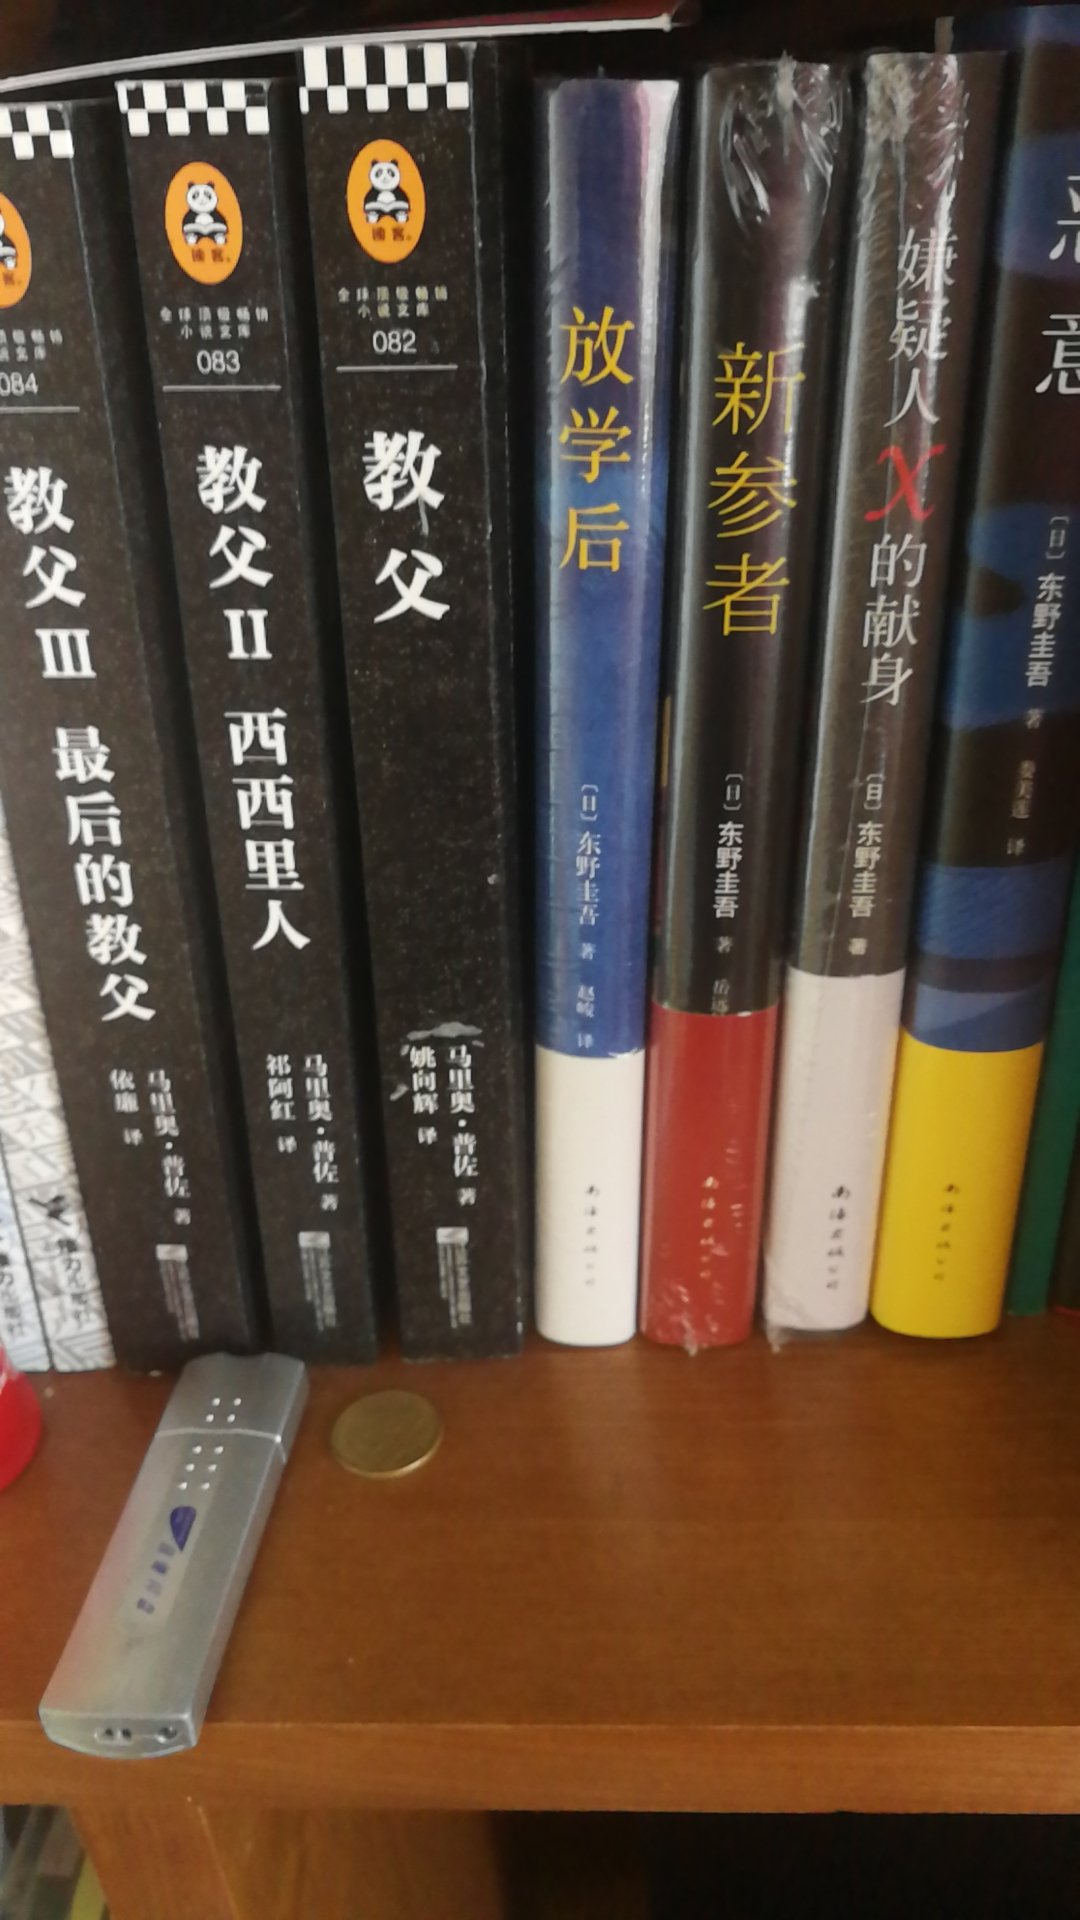 一套东野圭吾，不错。买了很多本他的书。易中天一套，也不错